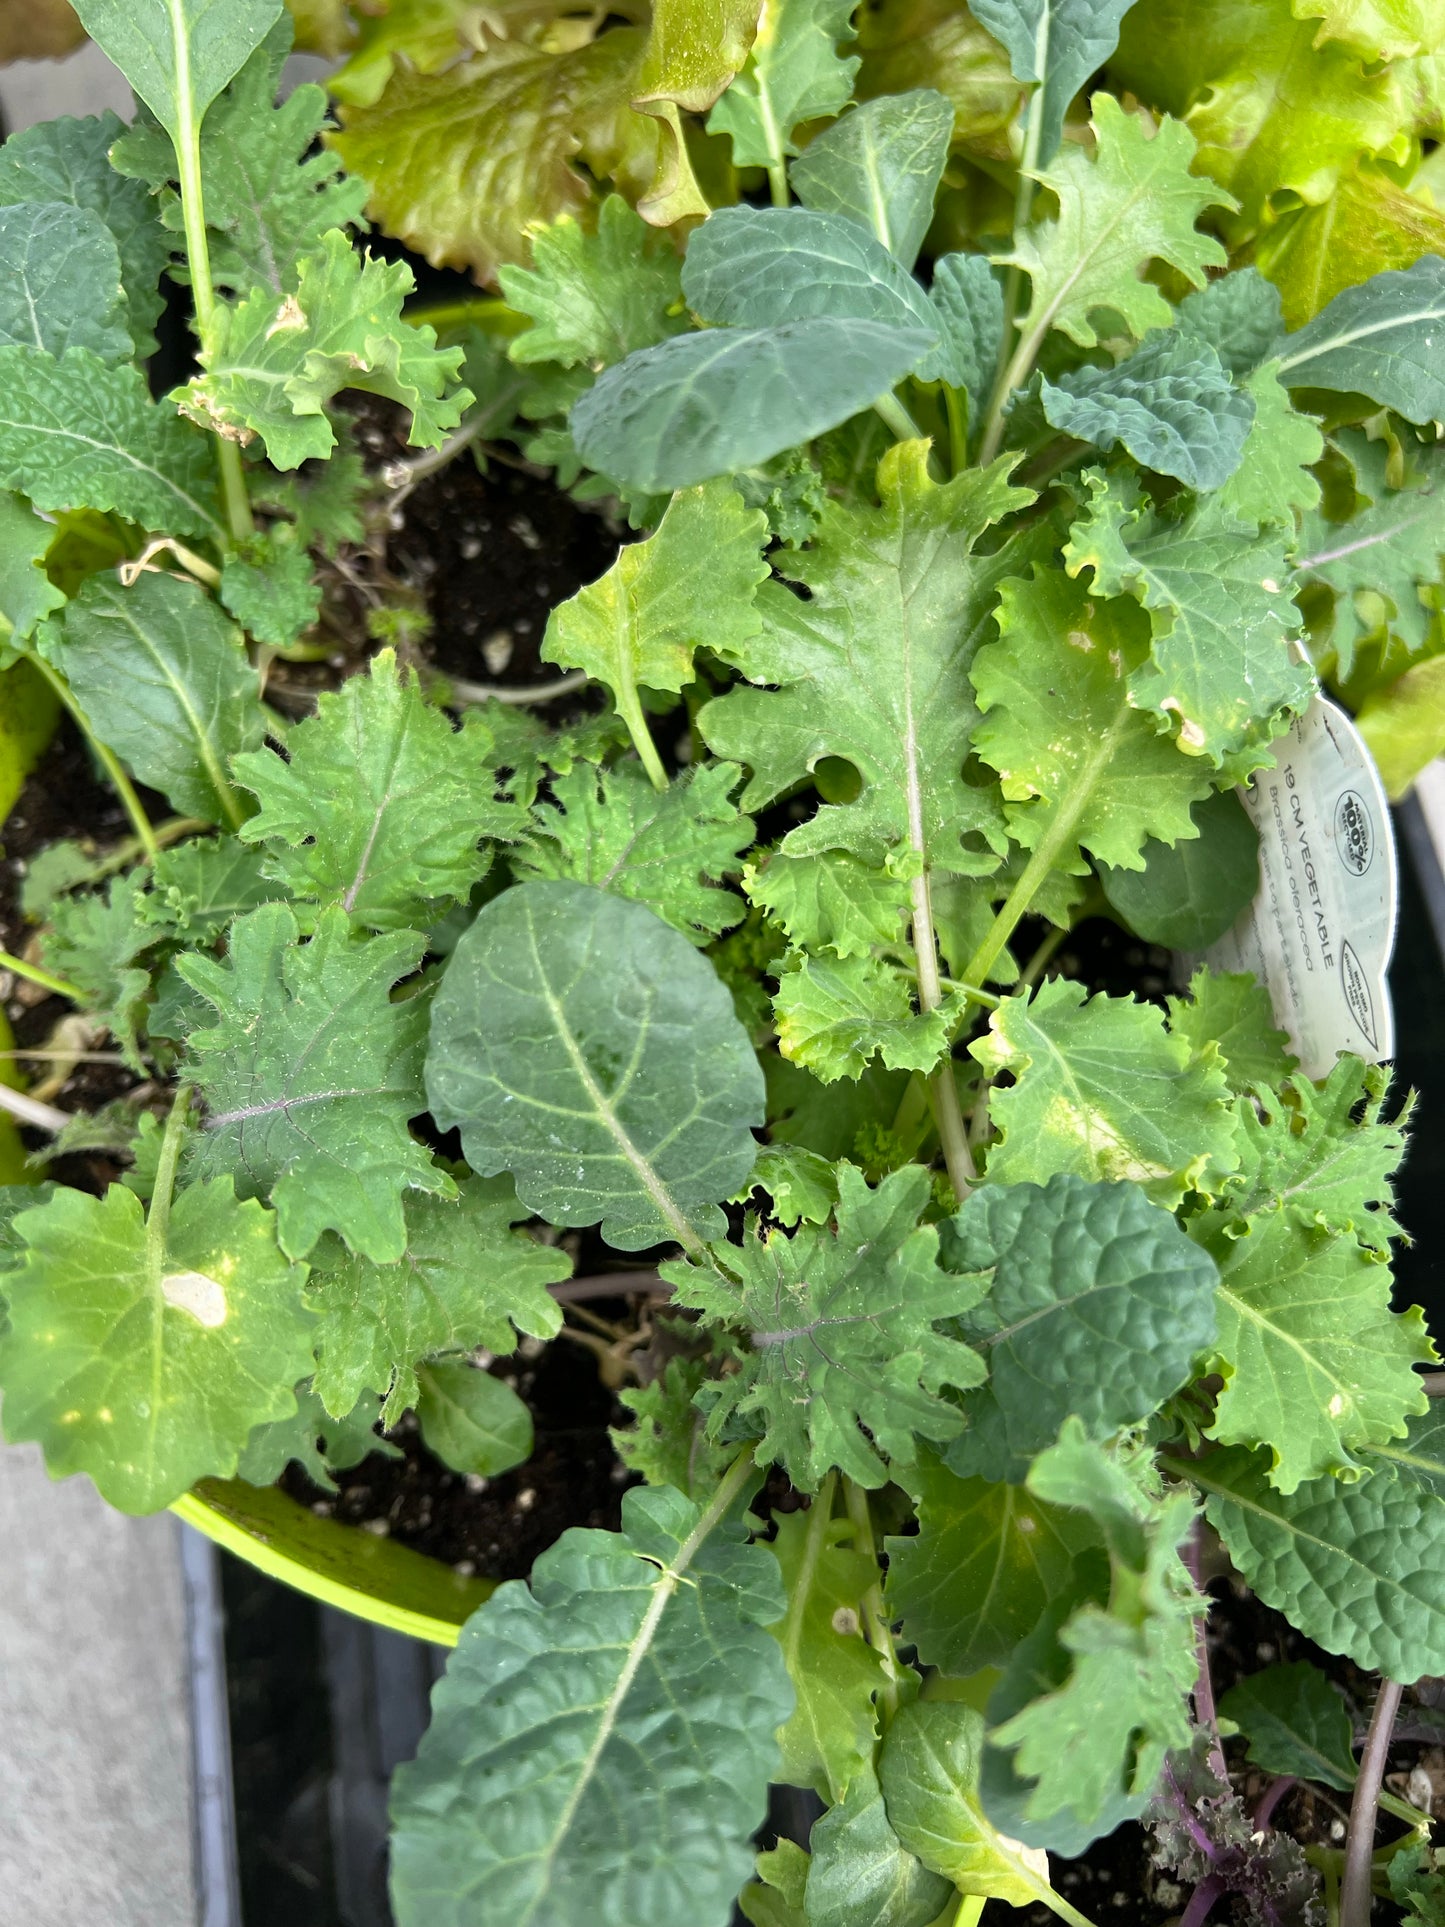 Lettuce | Garden Seedling